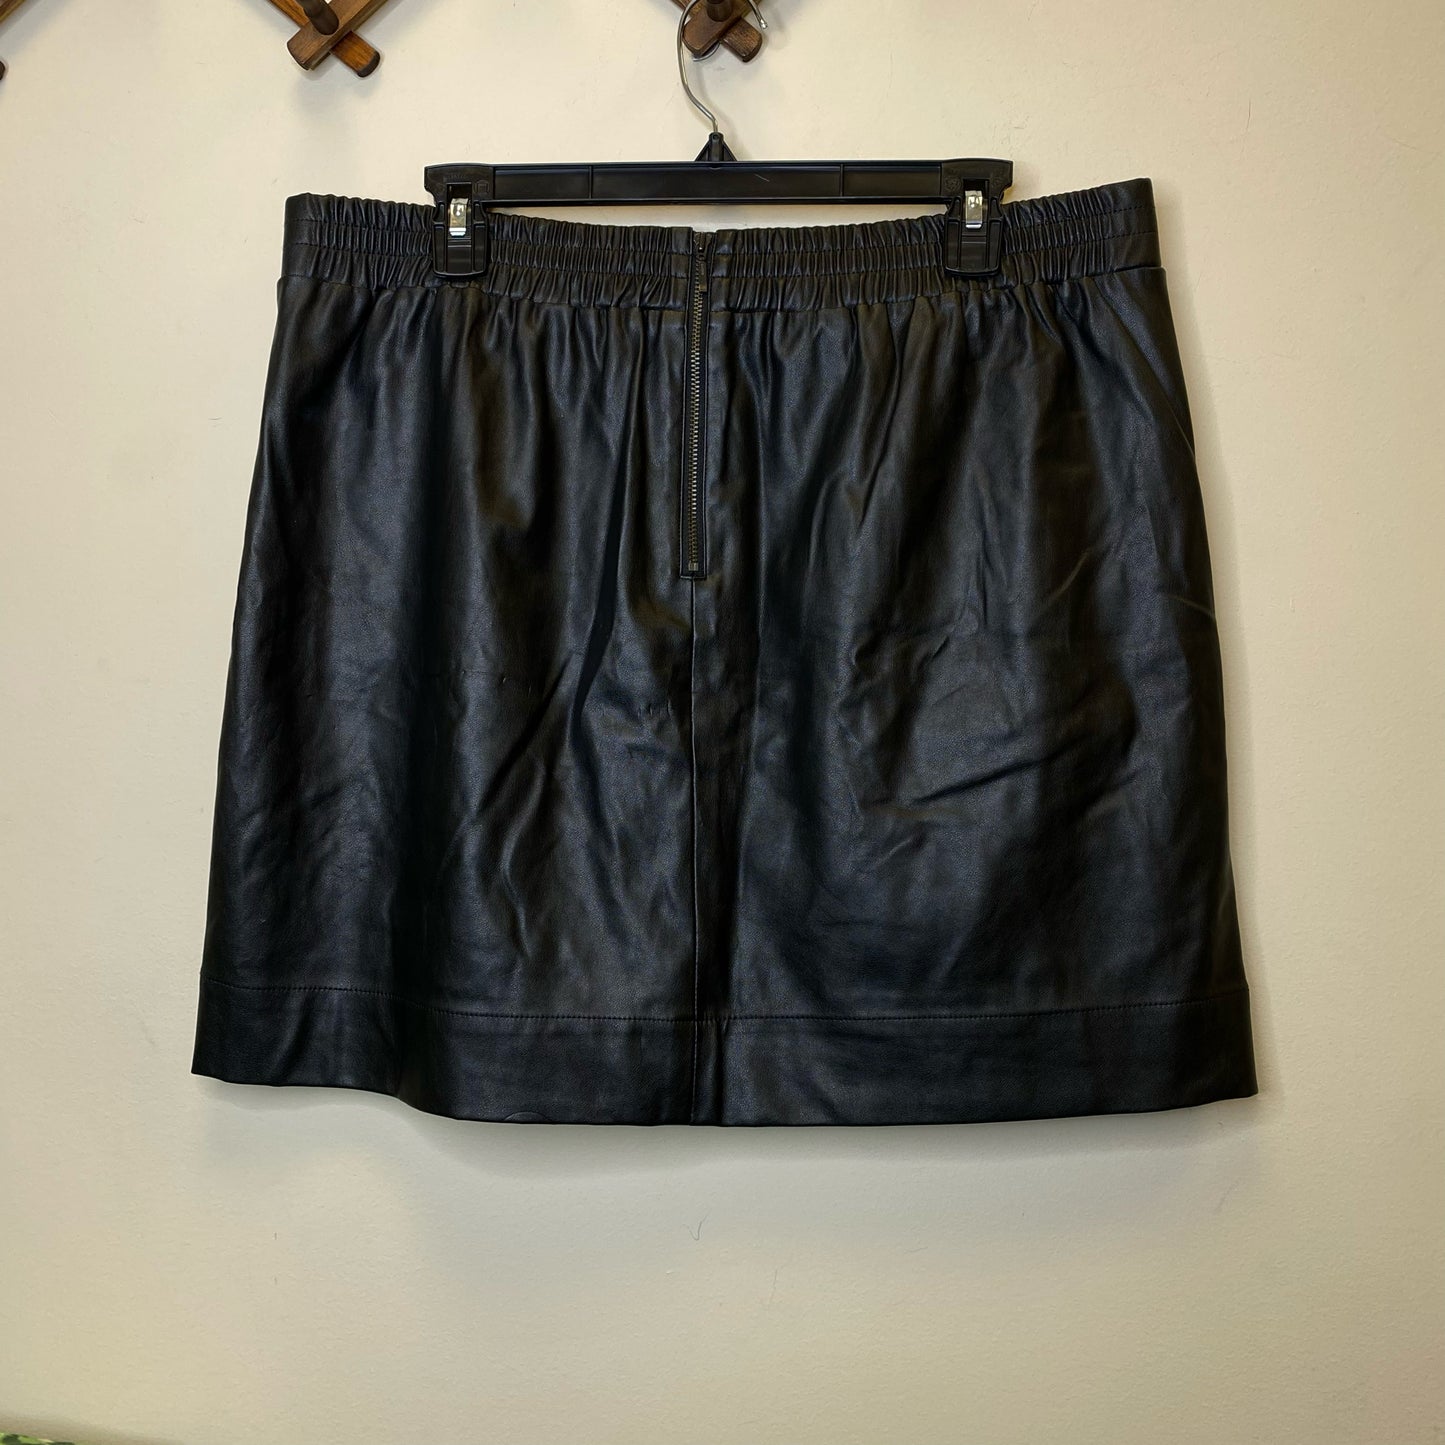 Loft Faux Leather Skirt - Size Large